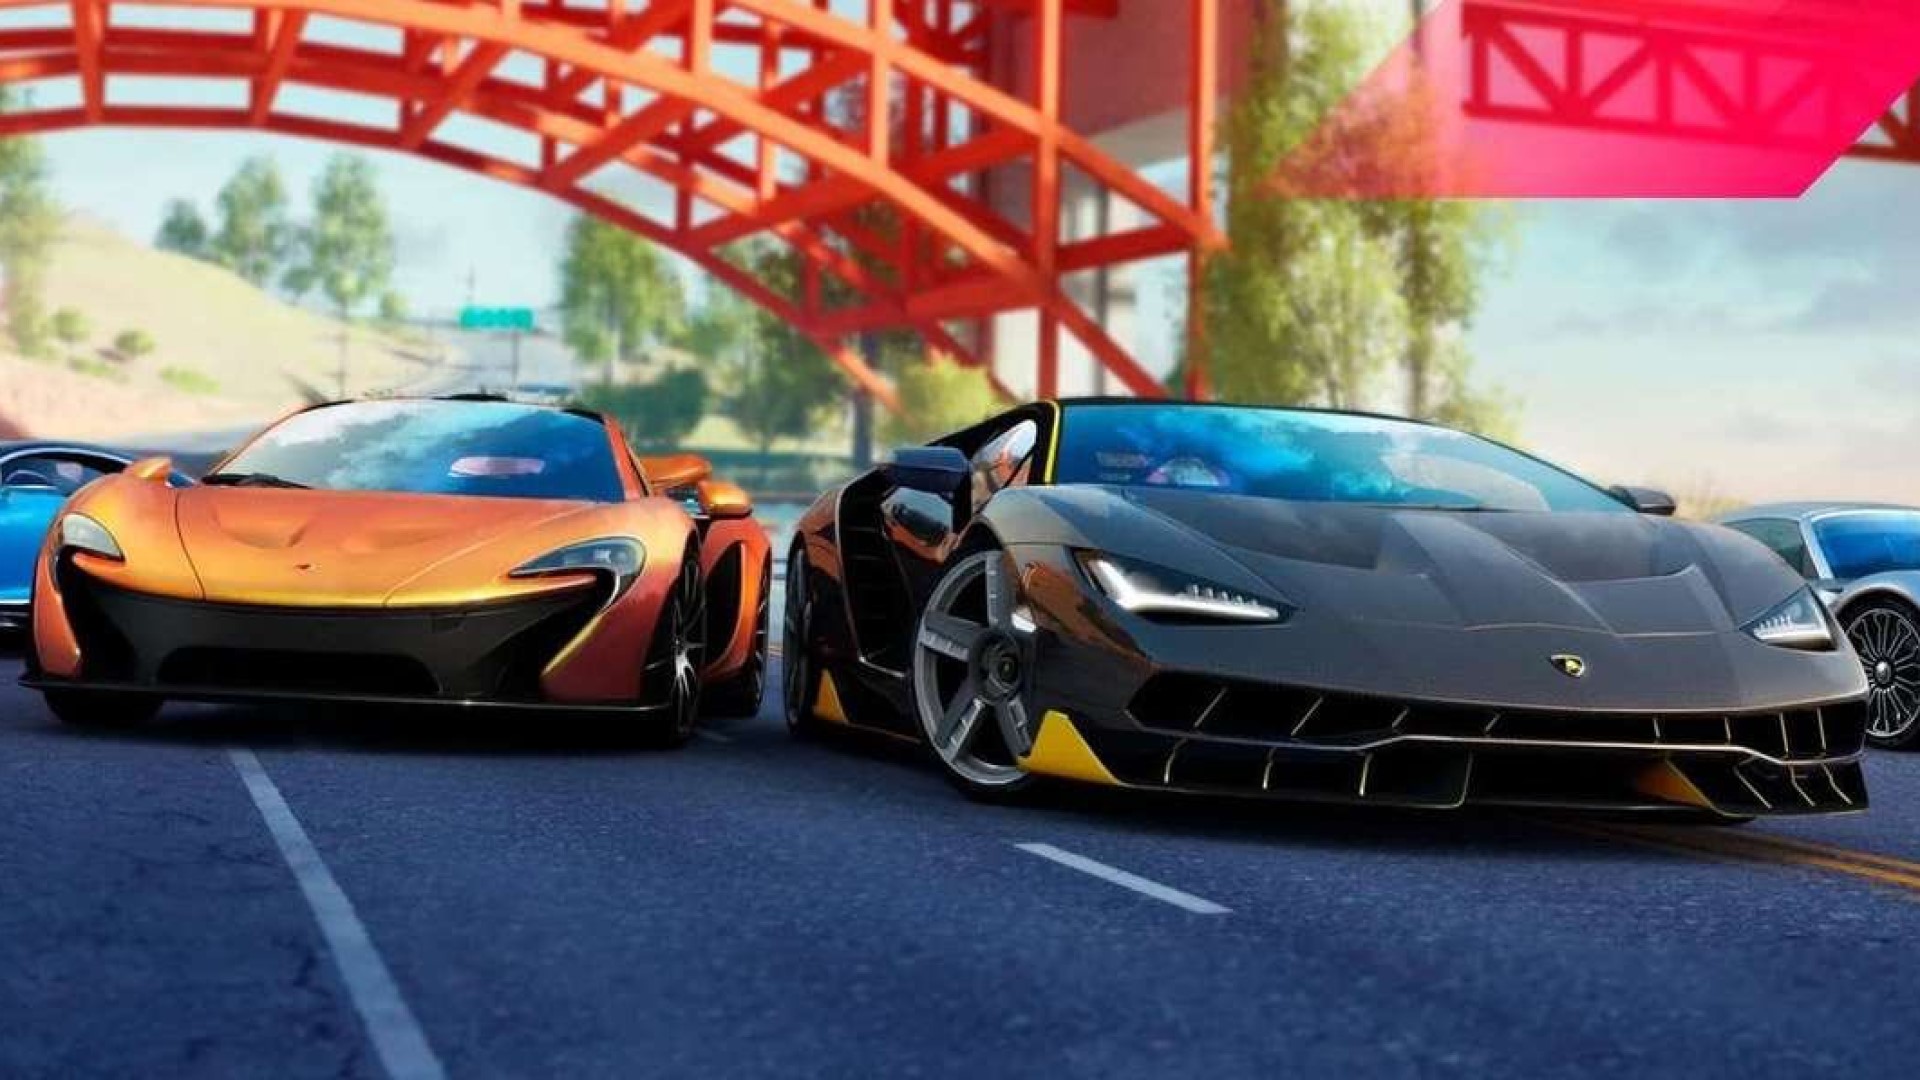 Best mobile multiplayer games: Asphalt 9: Legends. Image shows two cars driving.